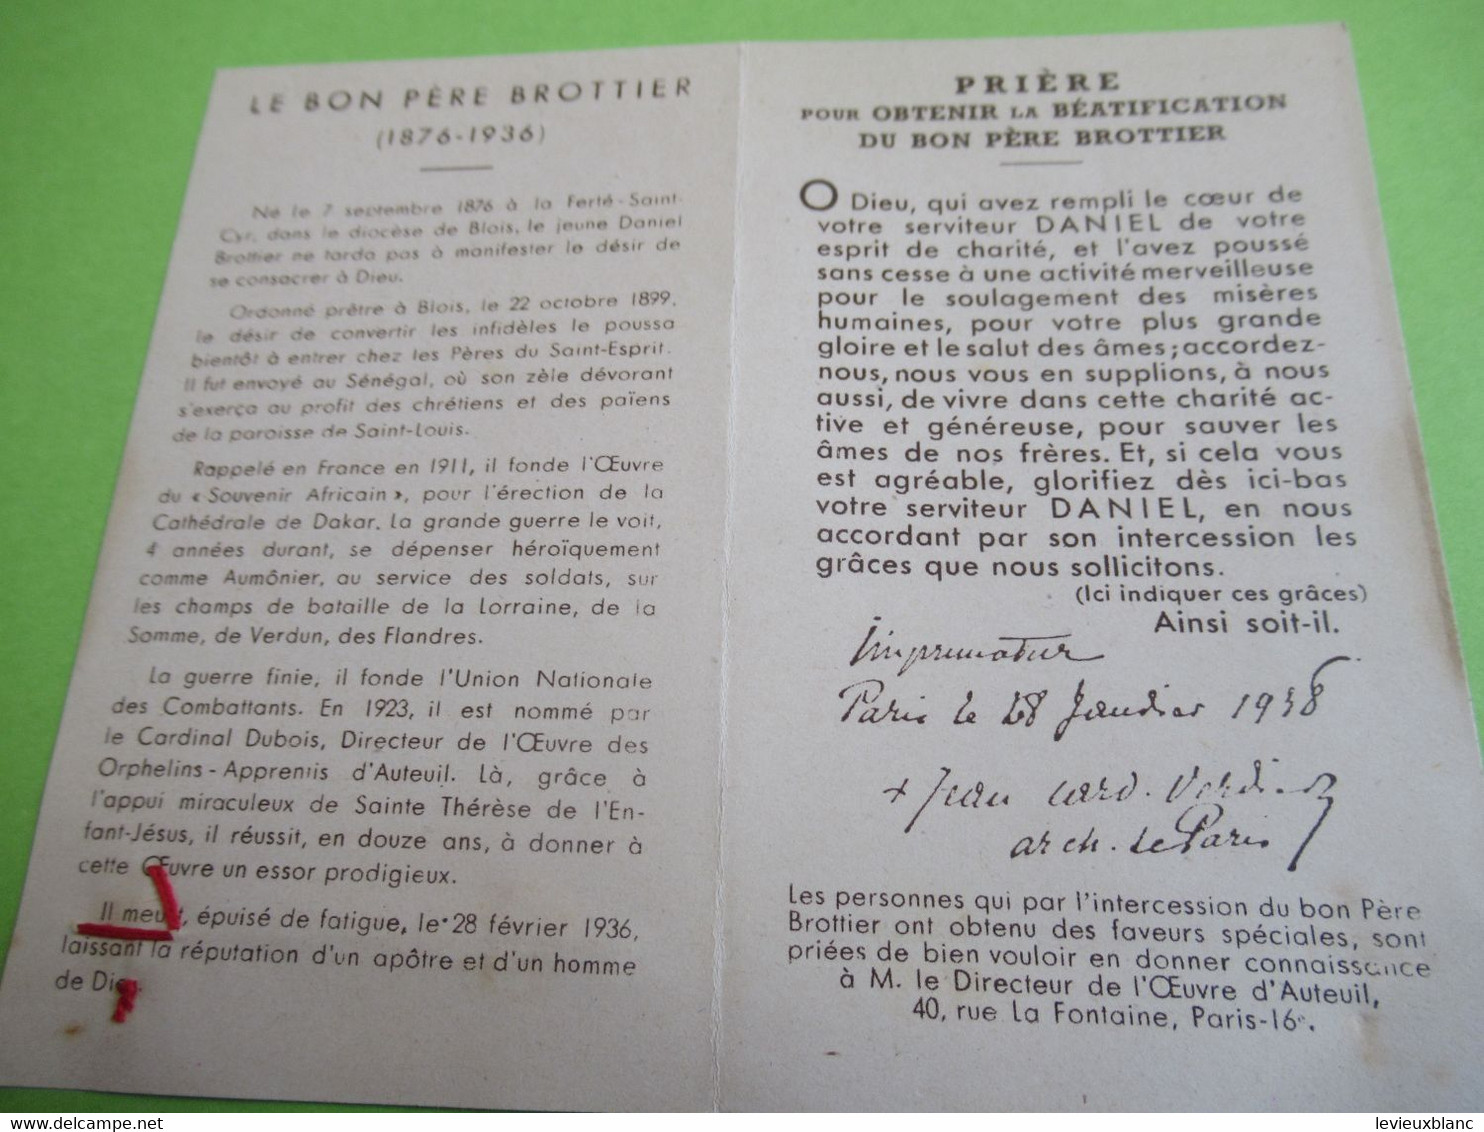 Image Pieuse Ancienne/Le Pére Daniet Brottier/Etoffe Ayant Touché/Cardinal Verdier Archevêque De Paris/1938   IMPI106a - Godsdienst & Esoterisme